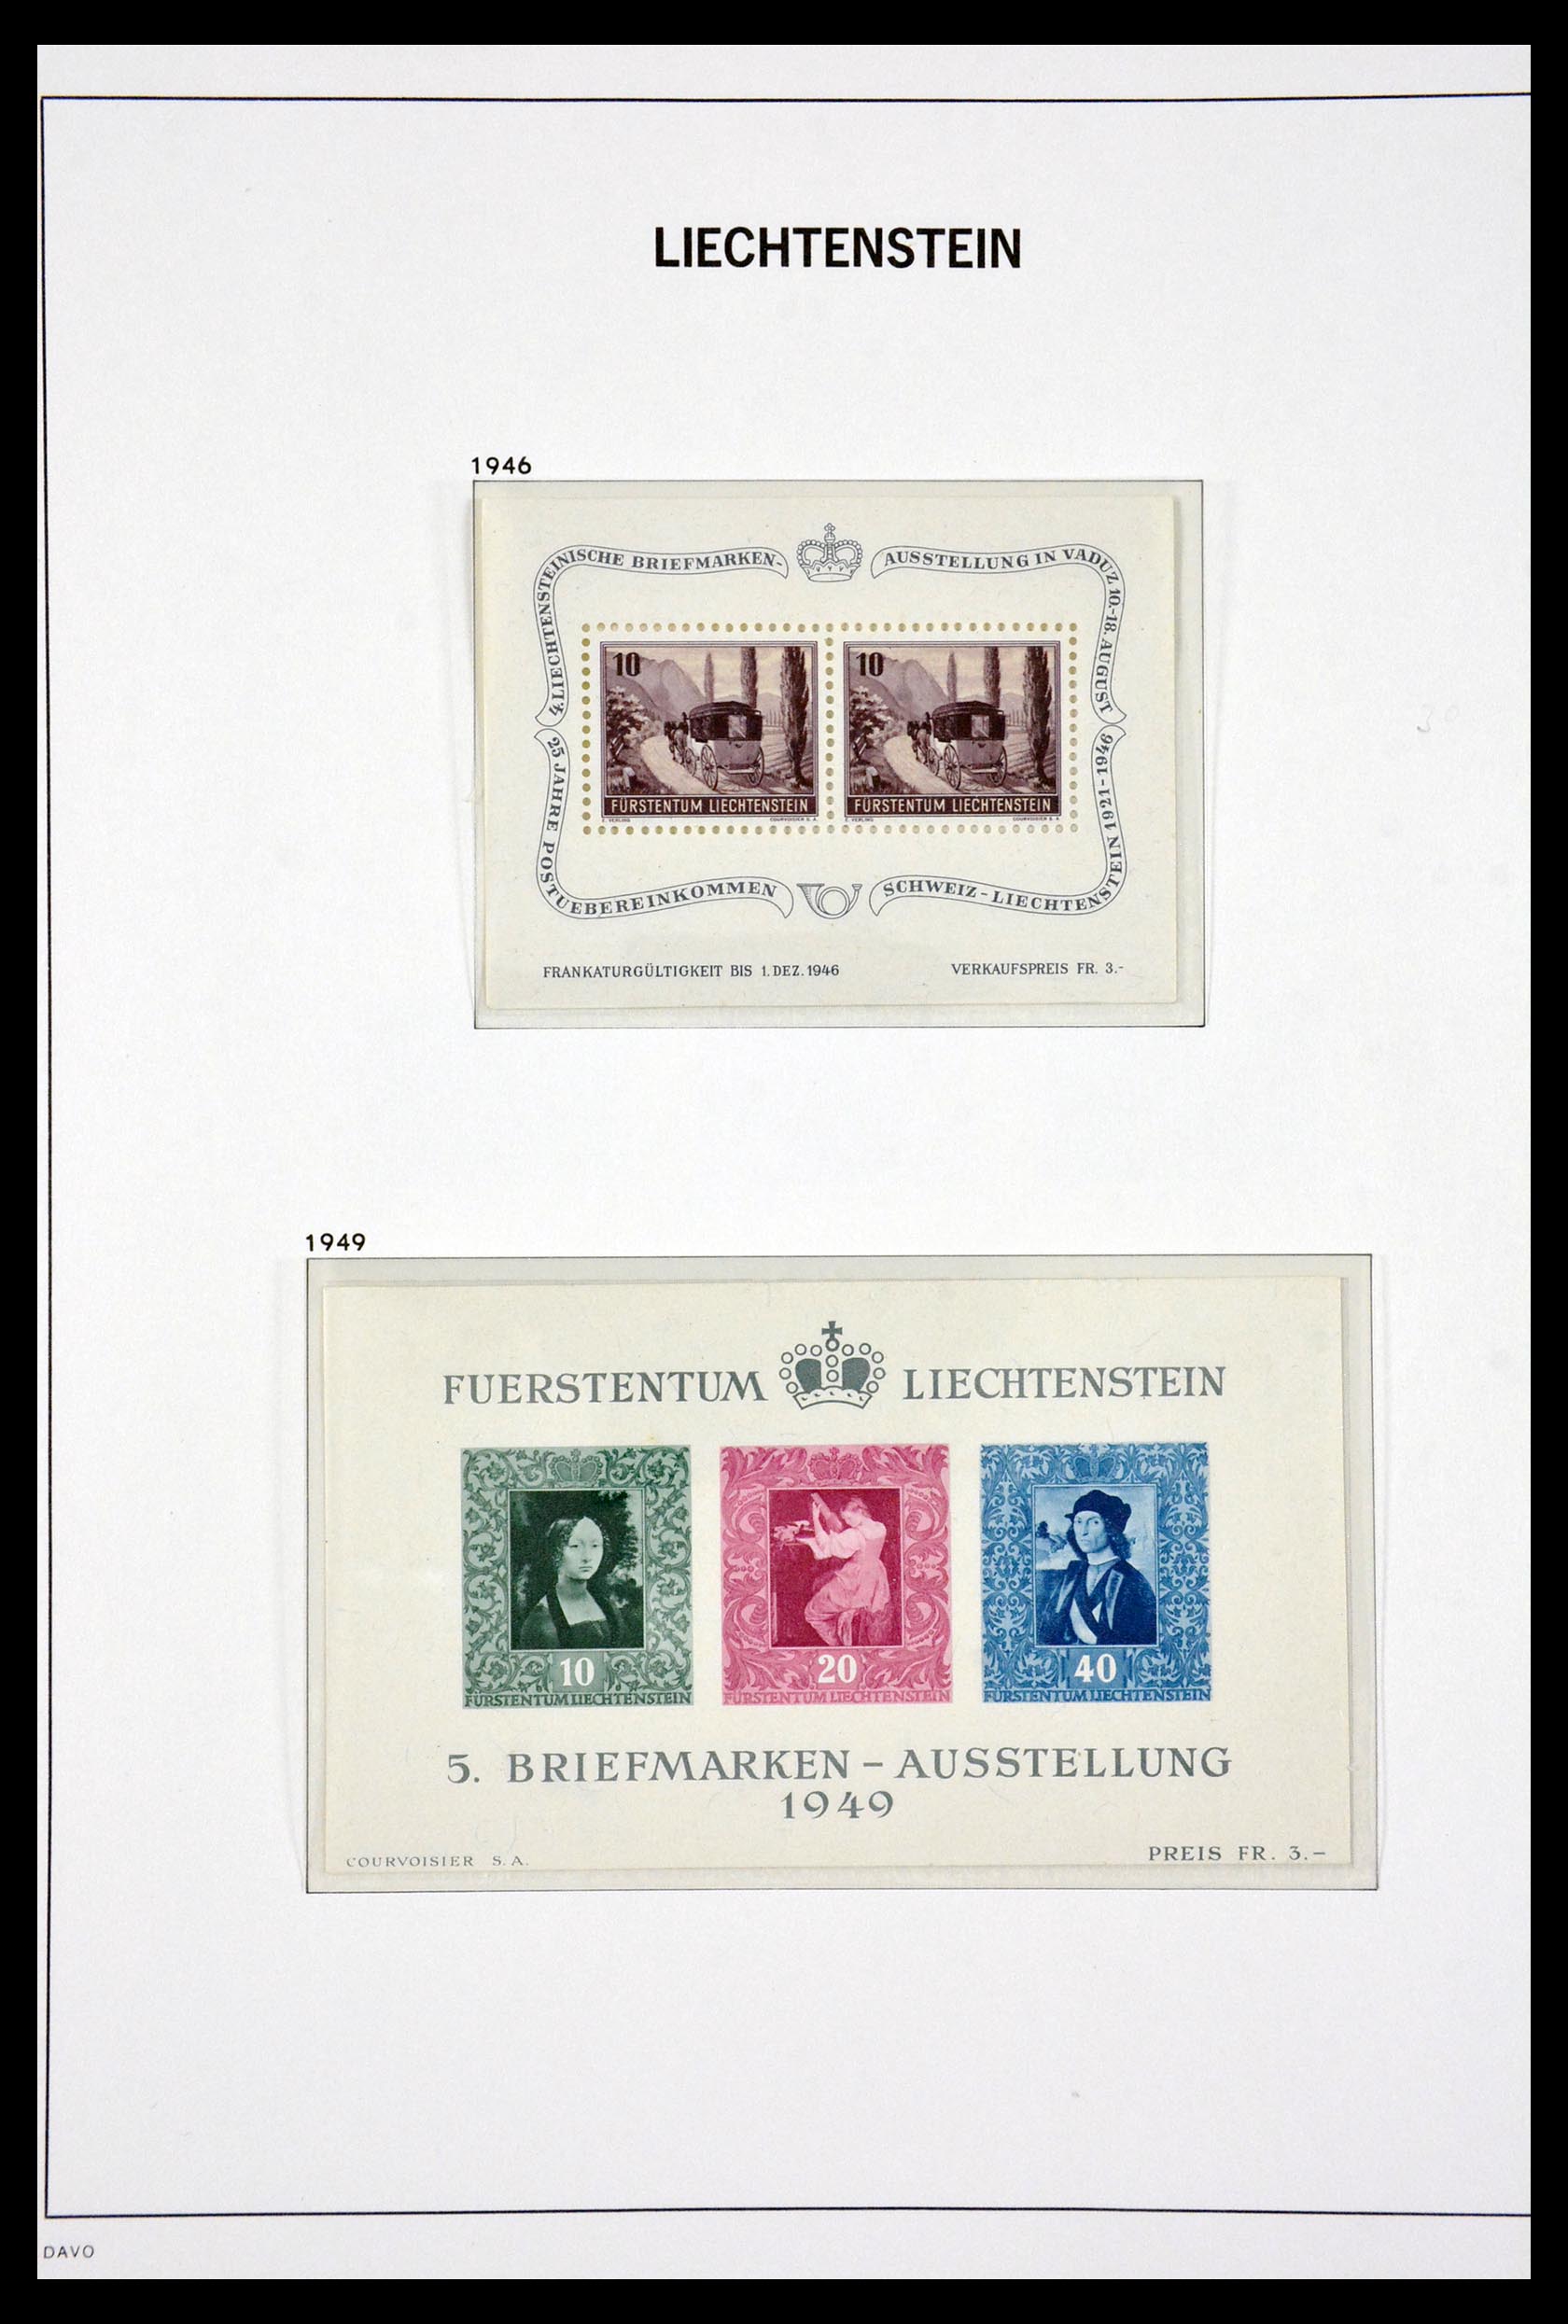 29750 043 - 29750 Liechtenstein 1912-2014.